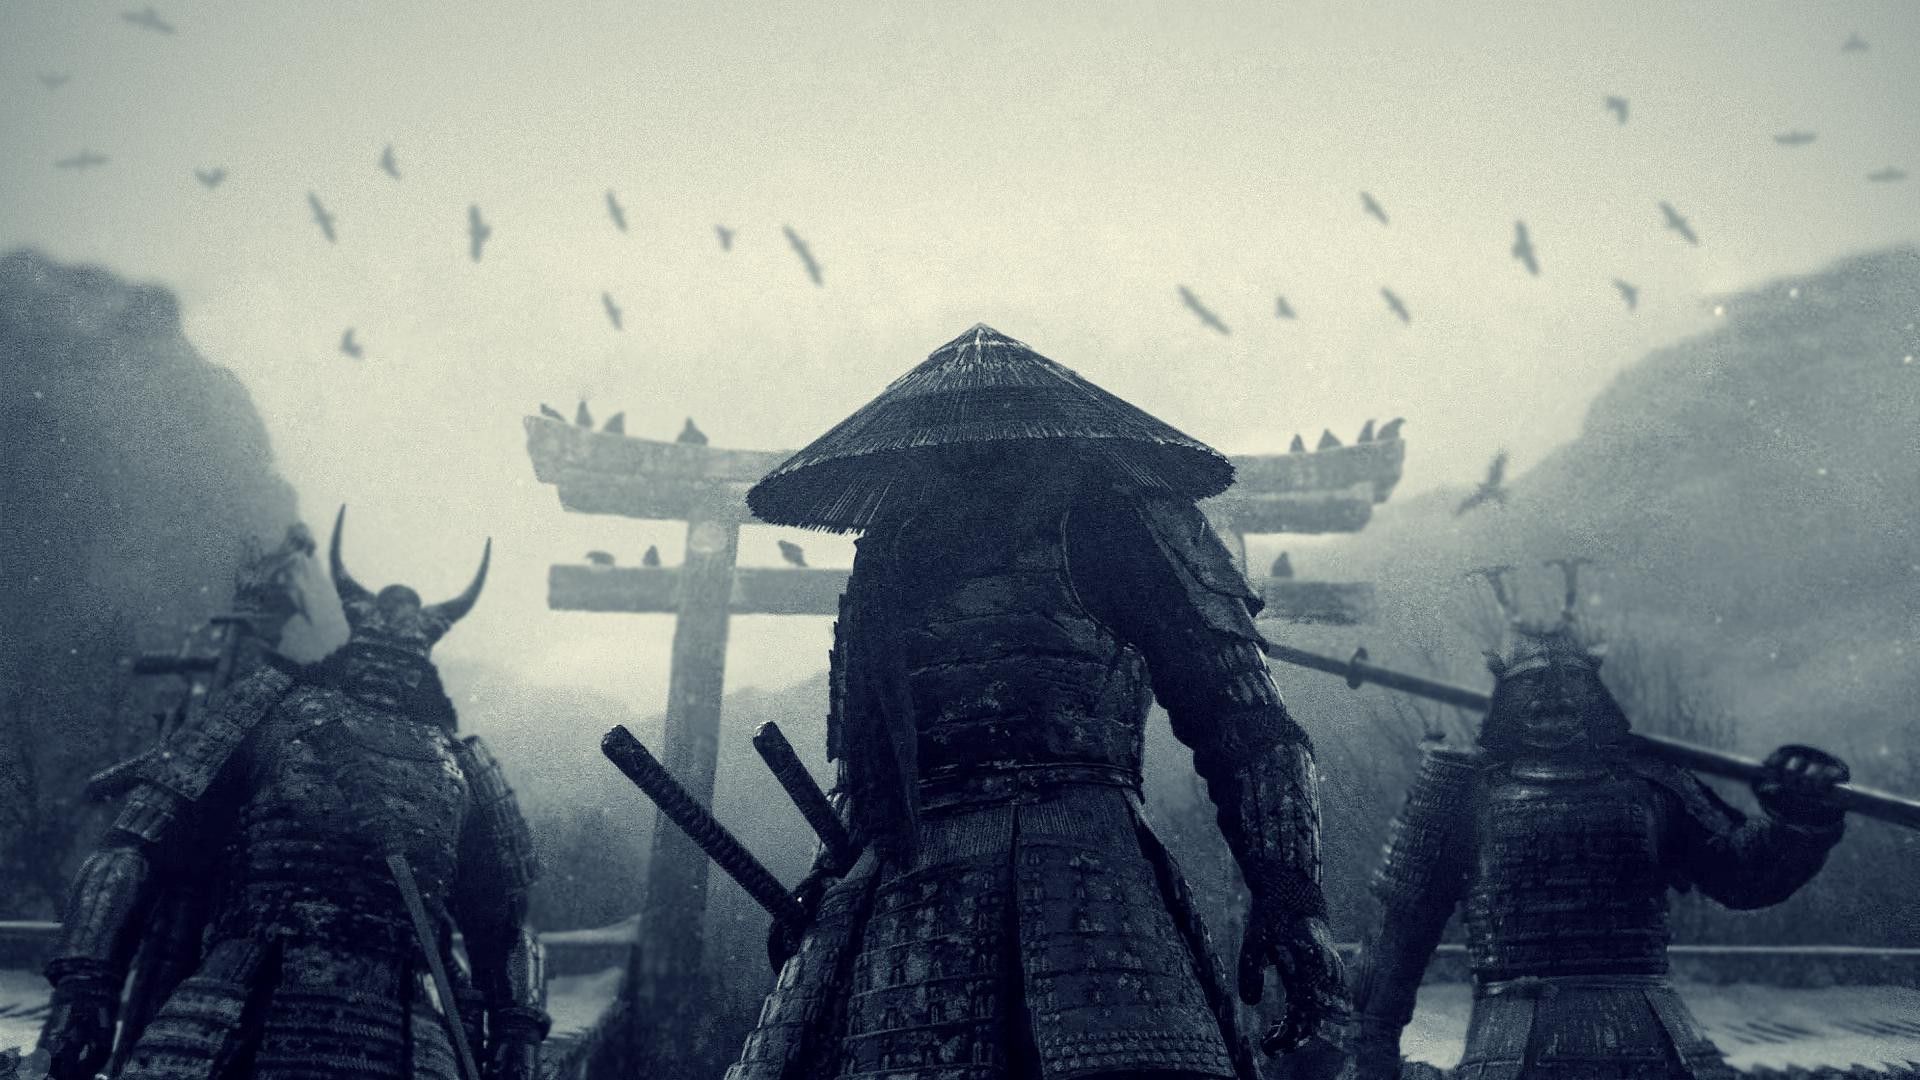 51+] Samurai Backgrounds - WallpaperSafari